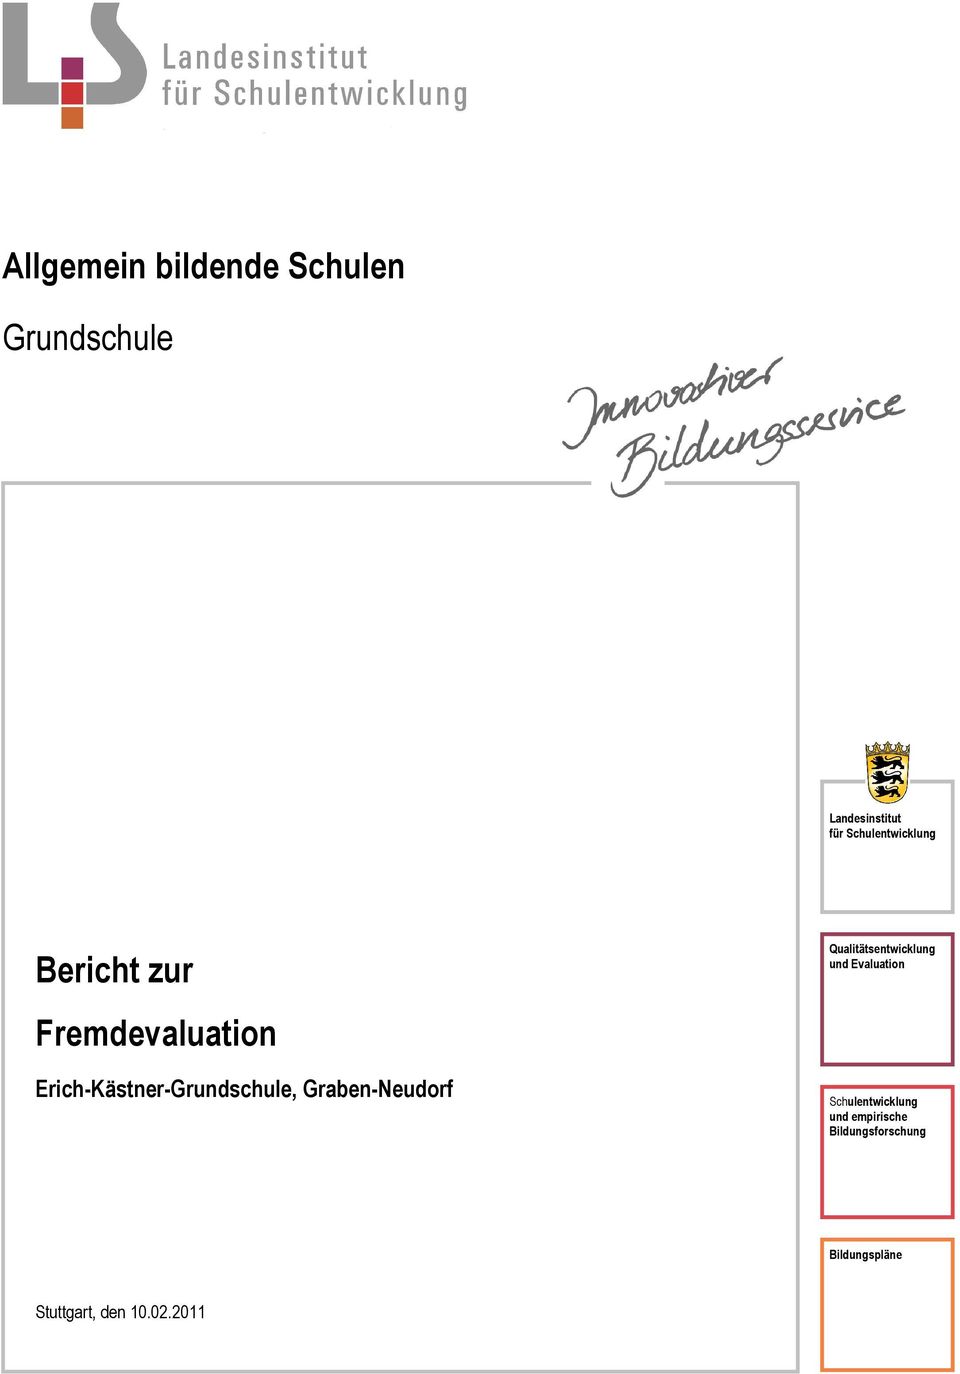 Erich-Kästner-Grundschule, Graben-Neudorf Qualitätsentwicklung und